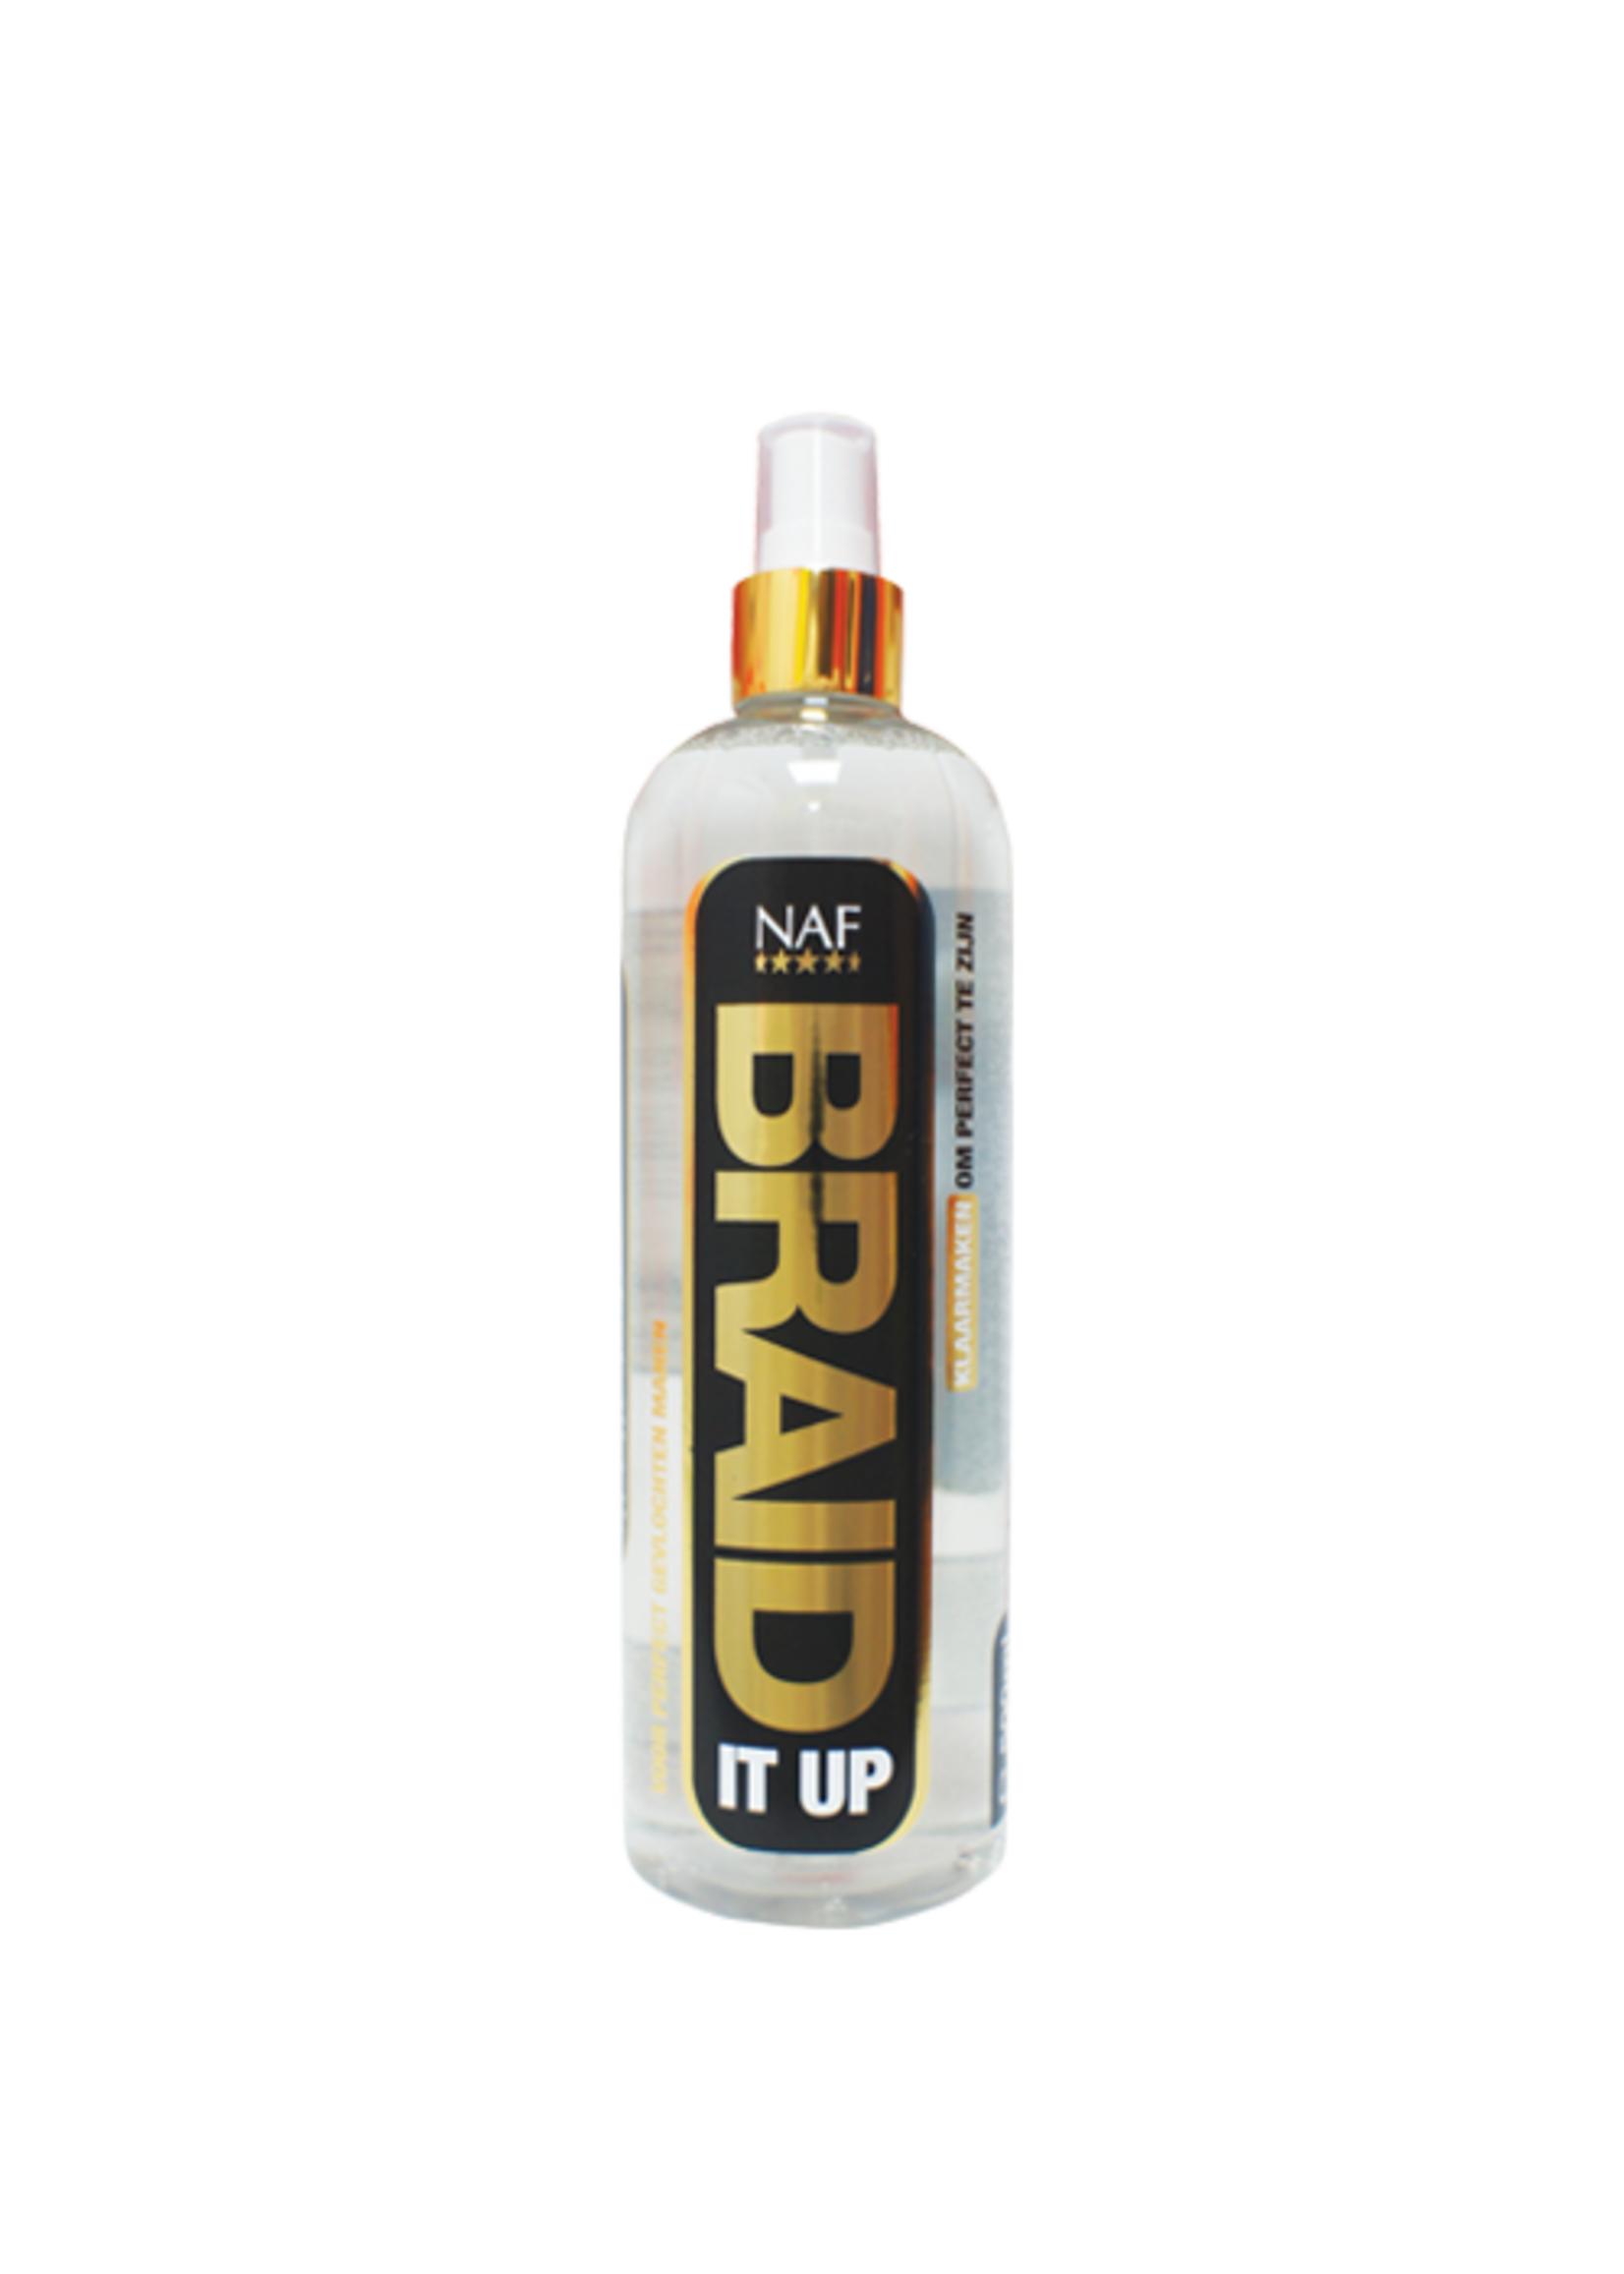 NAF Naf braid it up spray